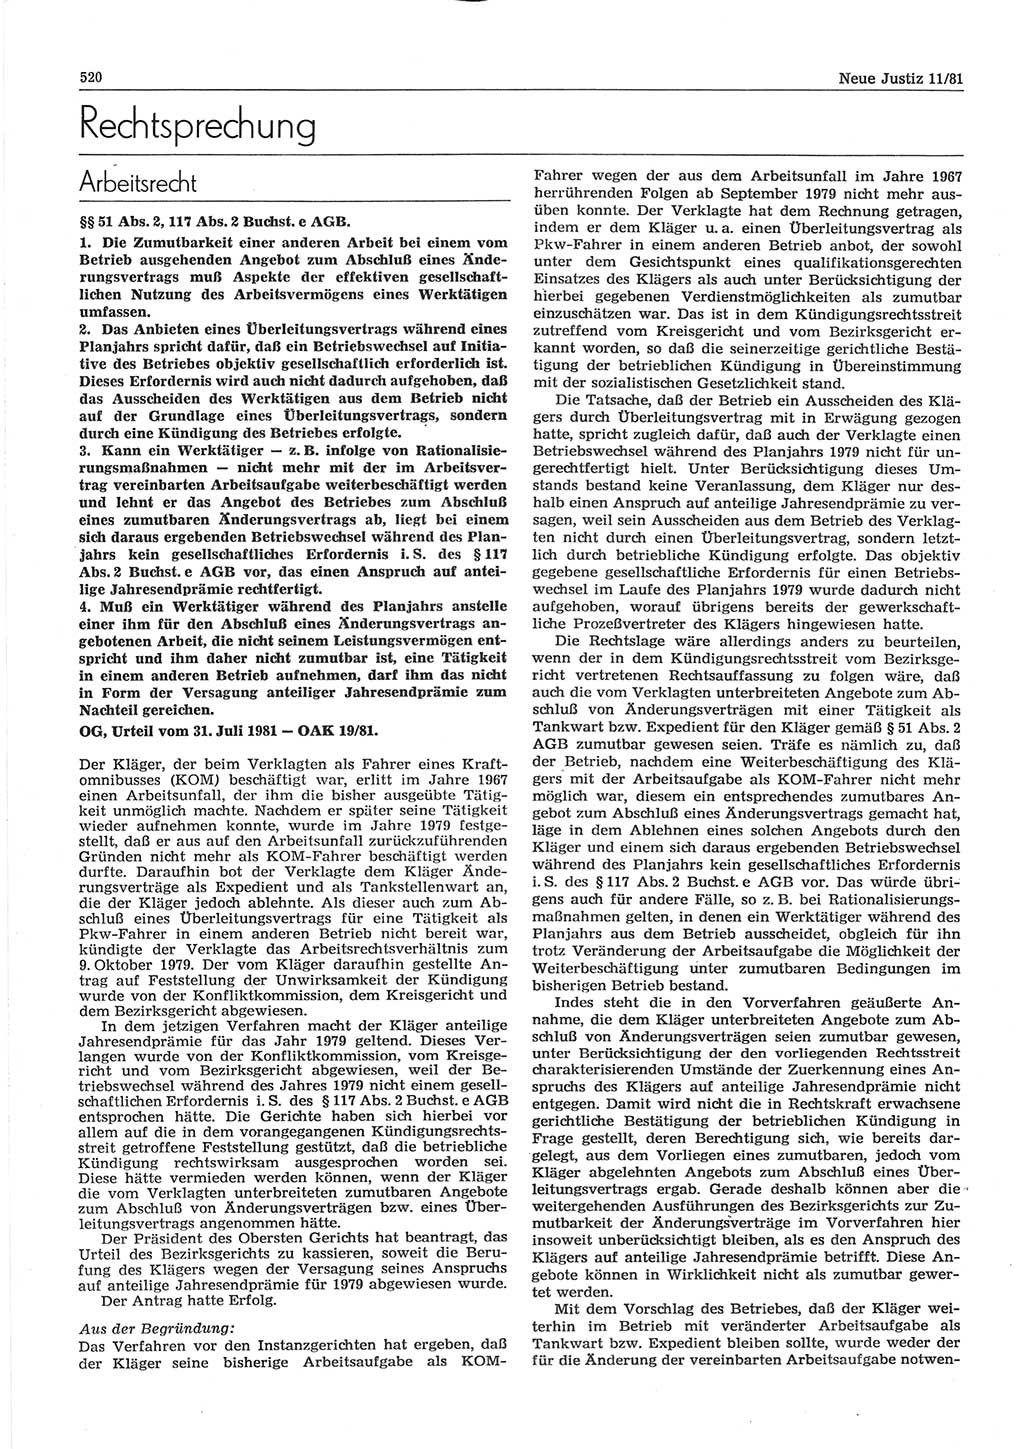 Neue Justiz (NJ), Zeitschrift für sozialistisches Recht und Gesetzlichkeit [Deutsche Demokratische Republik (DDR)], 35. Jahrgang 1981, Seite 520 (NJ DDR 1981, S. 520)